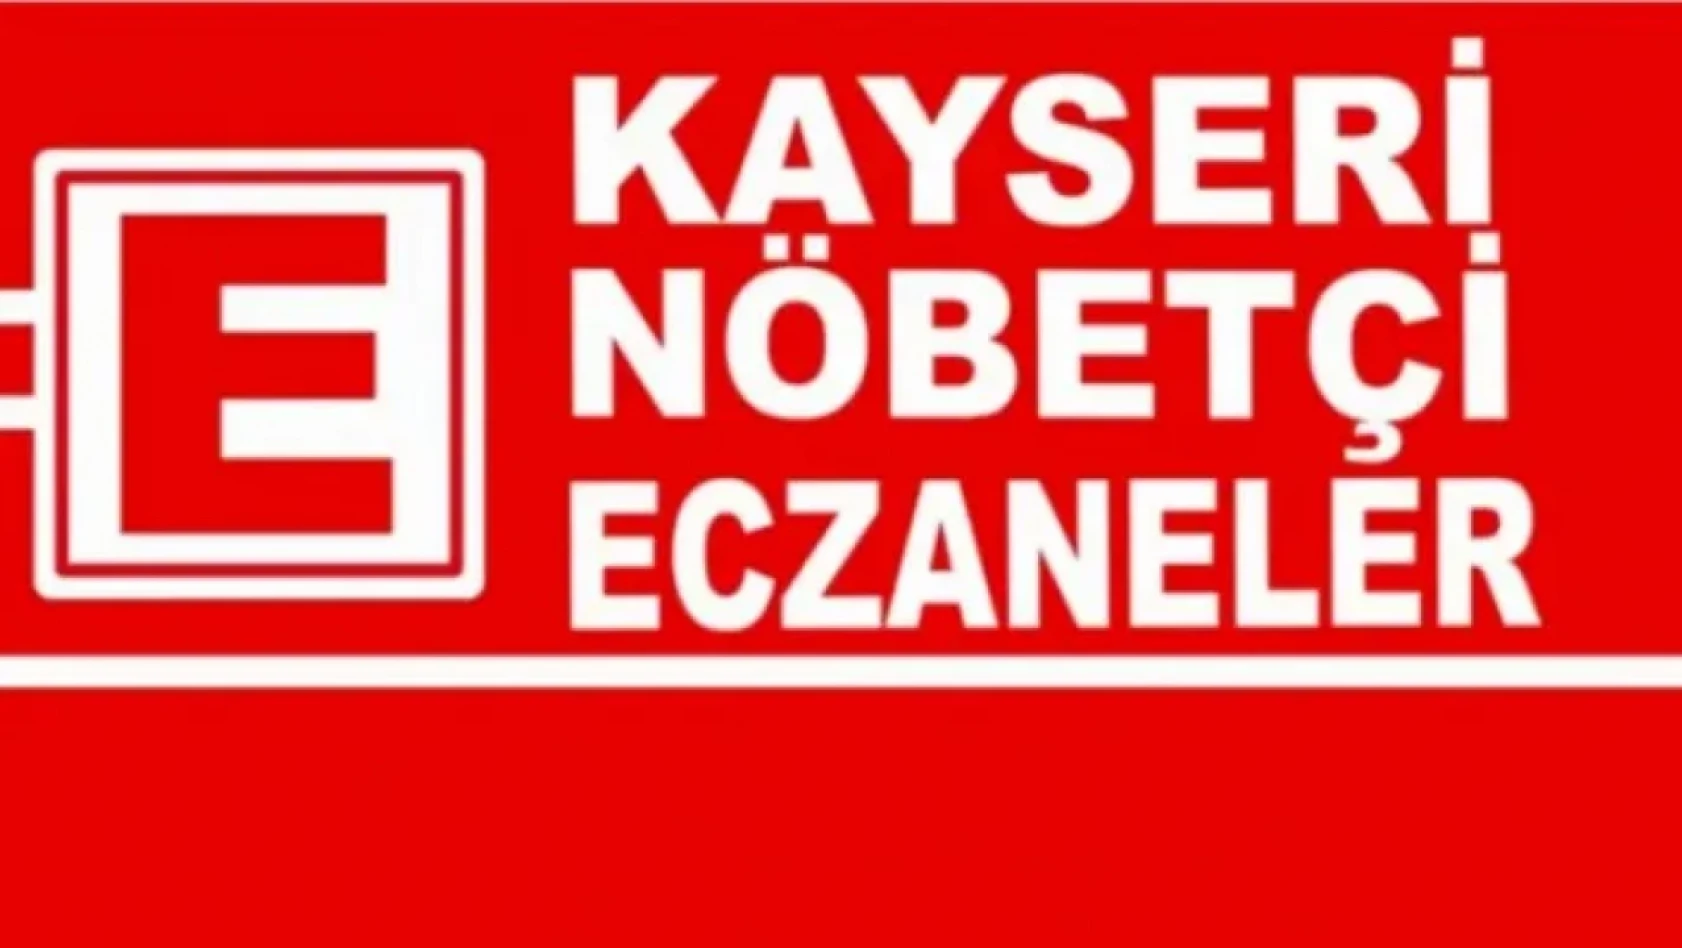 Kayseri'de Bugün nöbetçi eczaneler (1 Eylül) Cuma